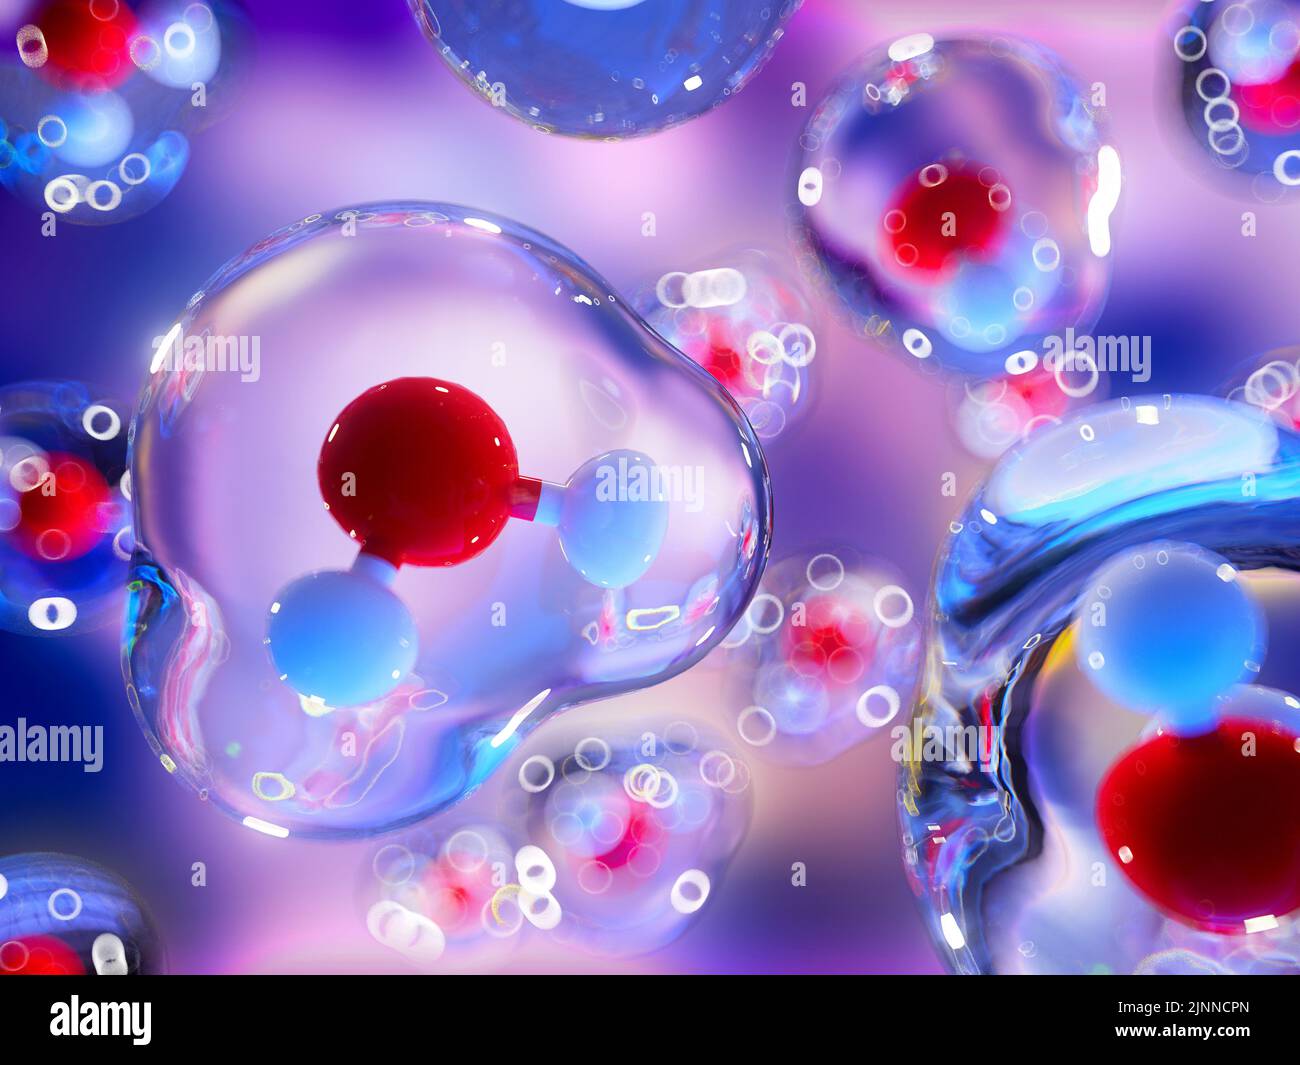 Ilustración de las moléculas de agua en el modelo de bola y palo, con las fuerzas de van der Waals mostradas como burbujas claras rodeando las moléculas. Foto de stock